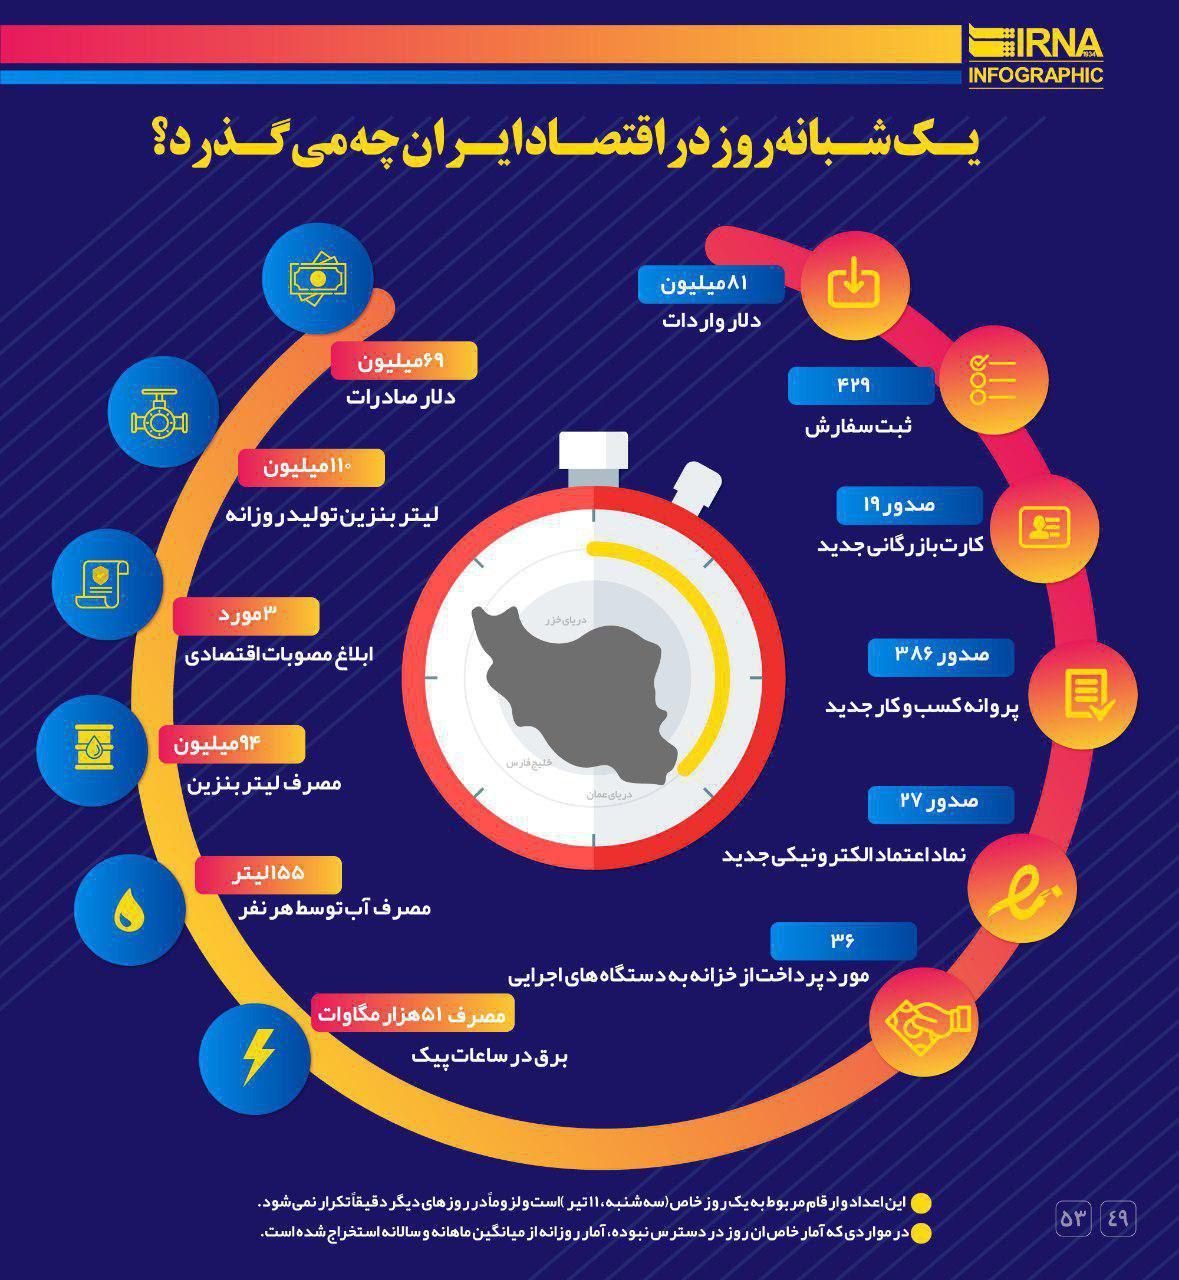 یک شبانه روز اقتصاد ایران به روایت اینفوگرافی